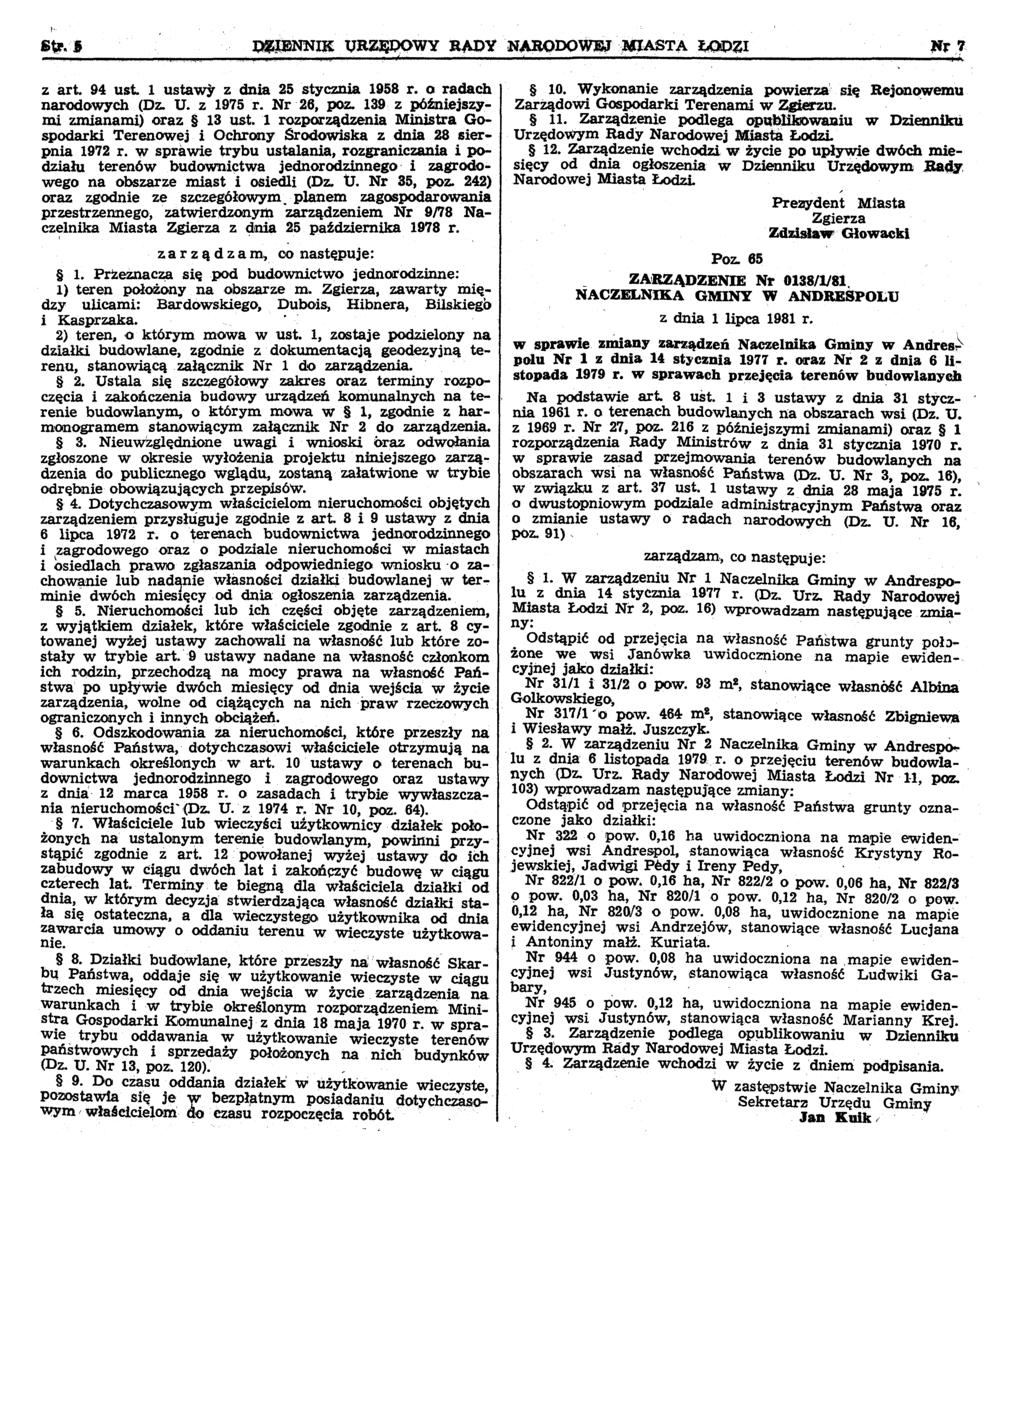 z art. 94 ust. 1 ustawy z dnia 25 stycznia 1958 r. o radach narodowych (Dz. U. z 1975 r. Nr '26, paz. 139 z późniejszymi zmianami) oraz 13 ust.